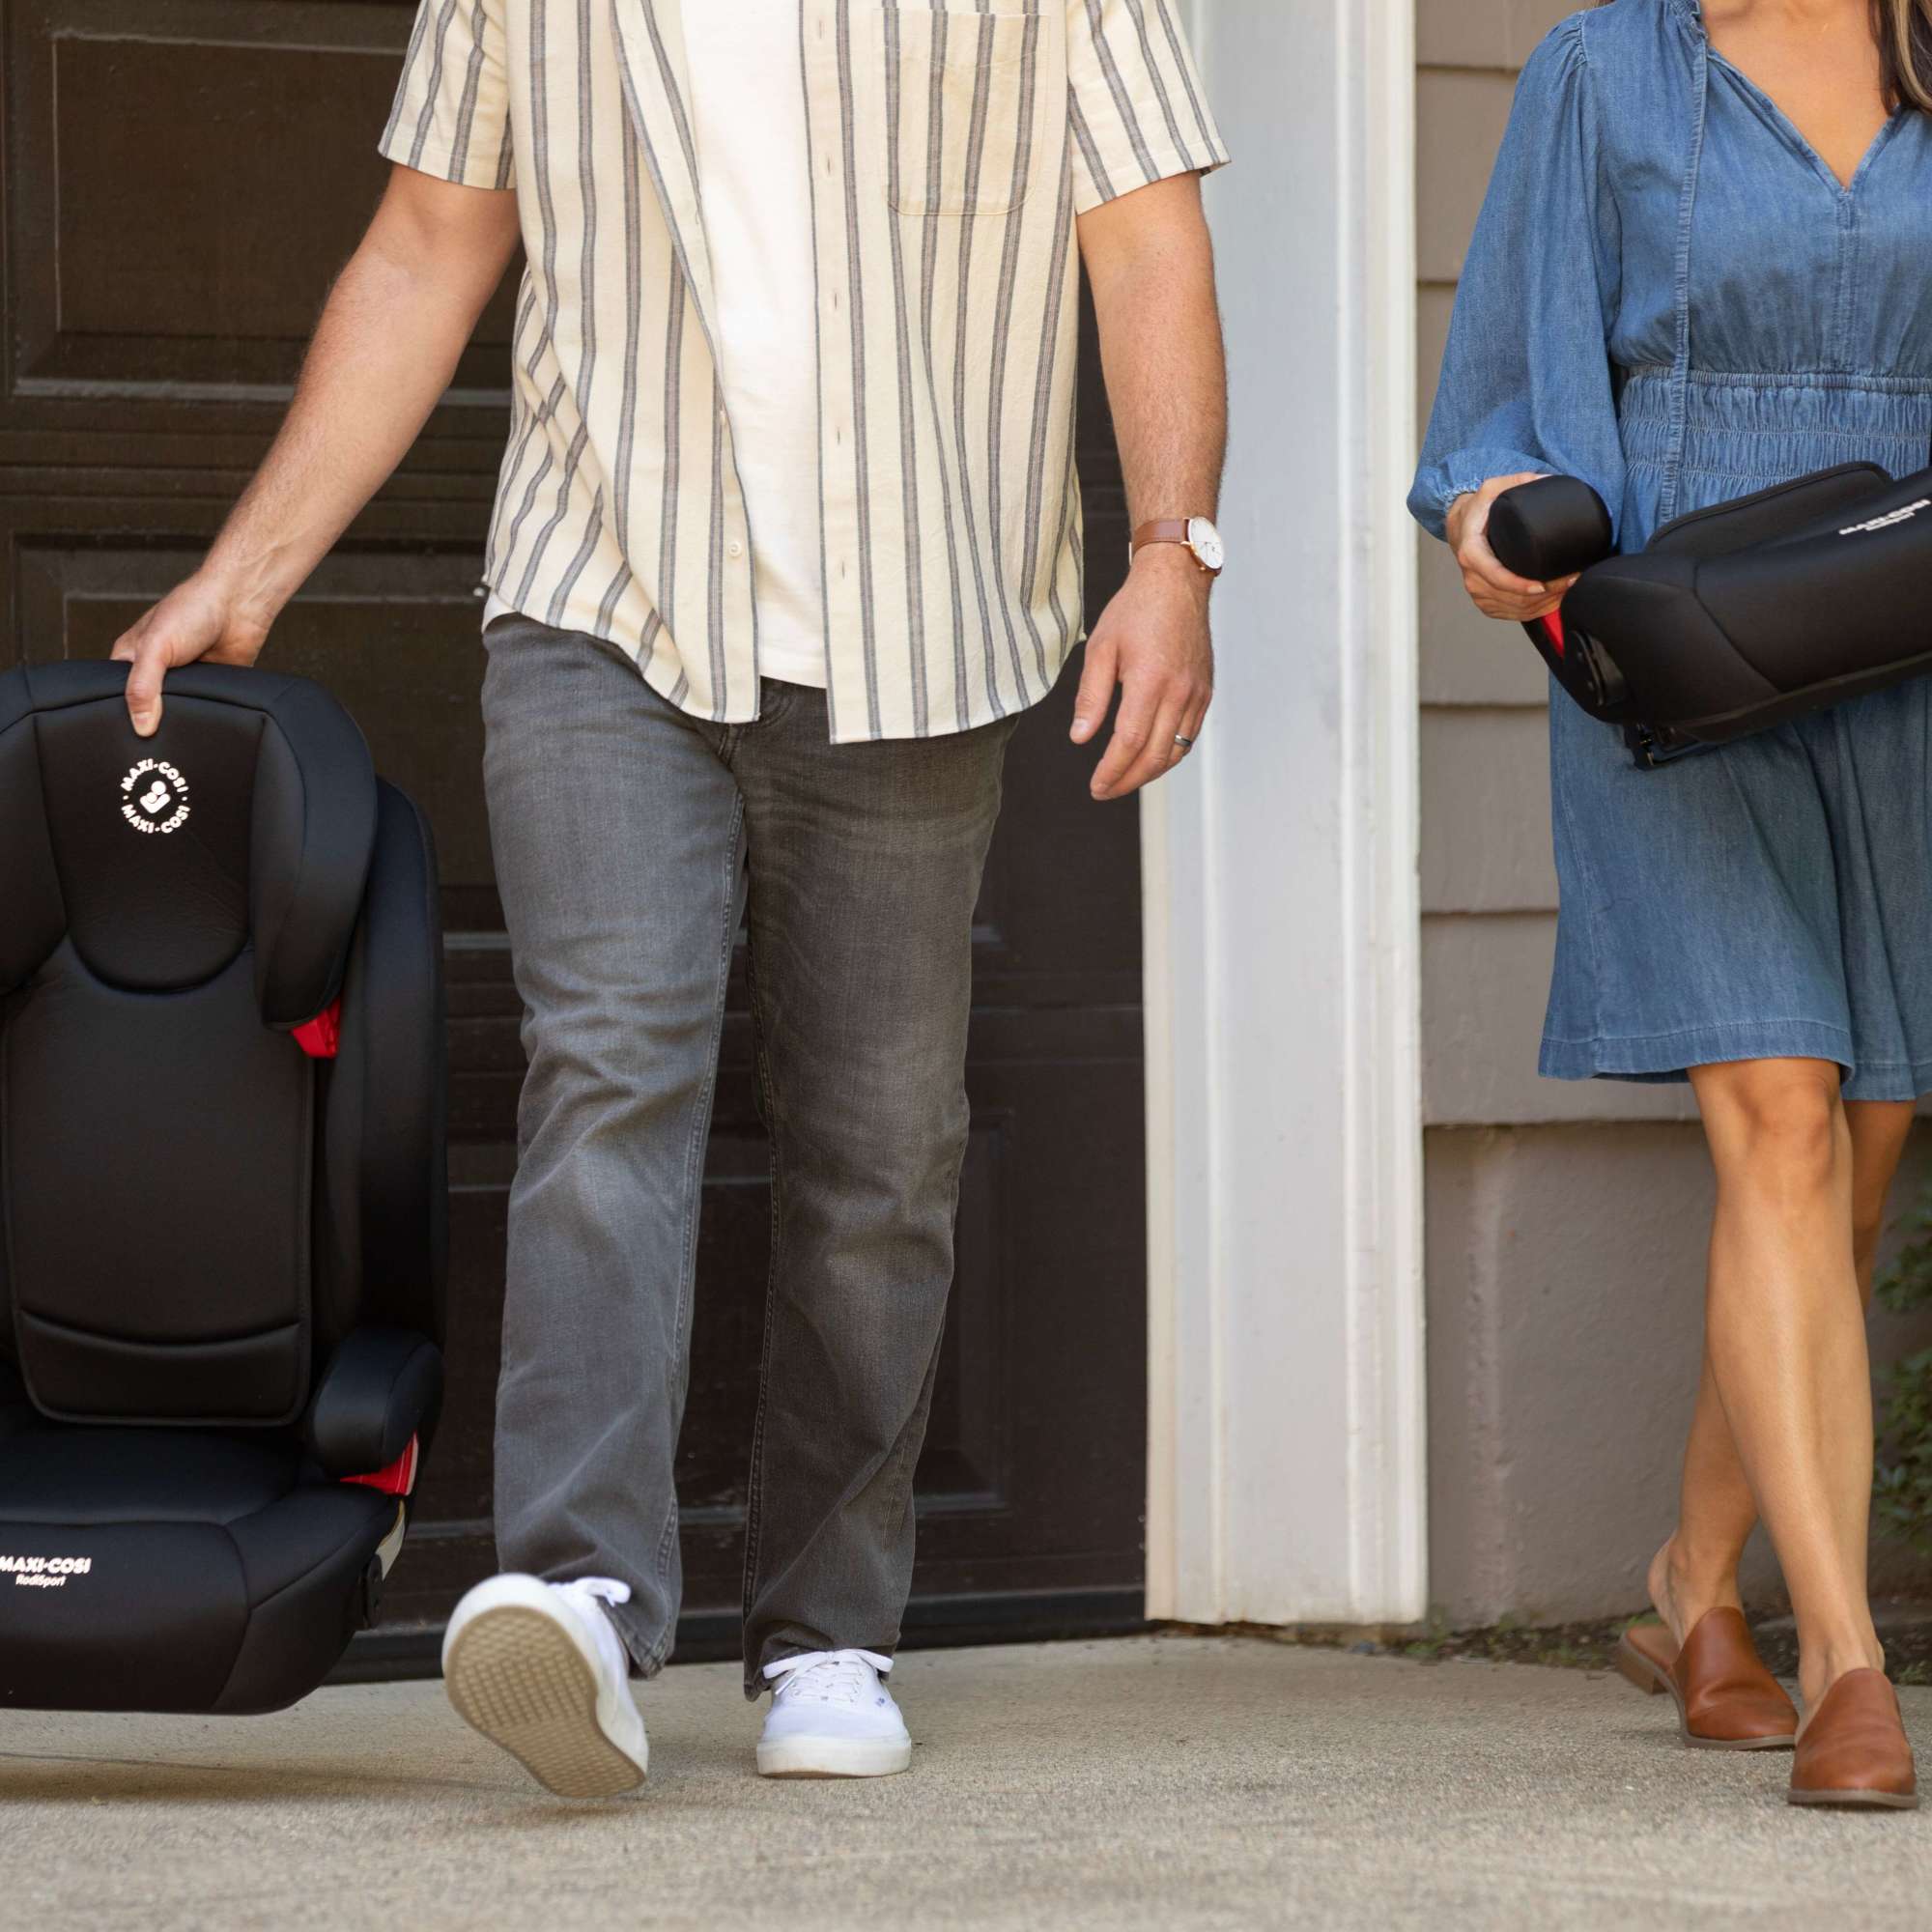 RodiSport Booster Car Seat - parents carrying car seats